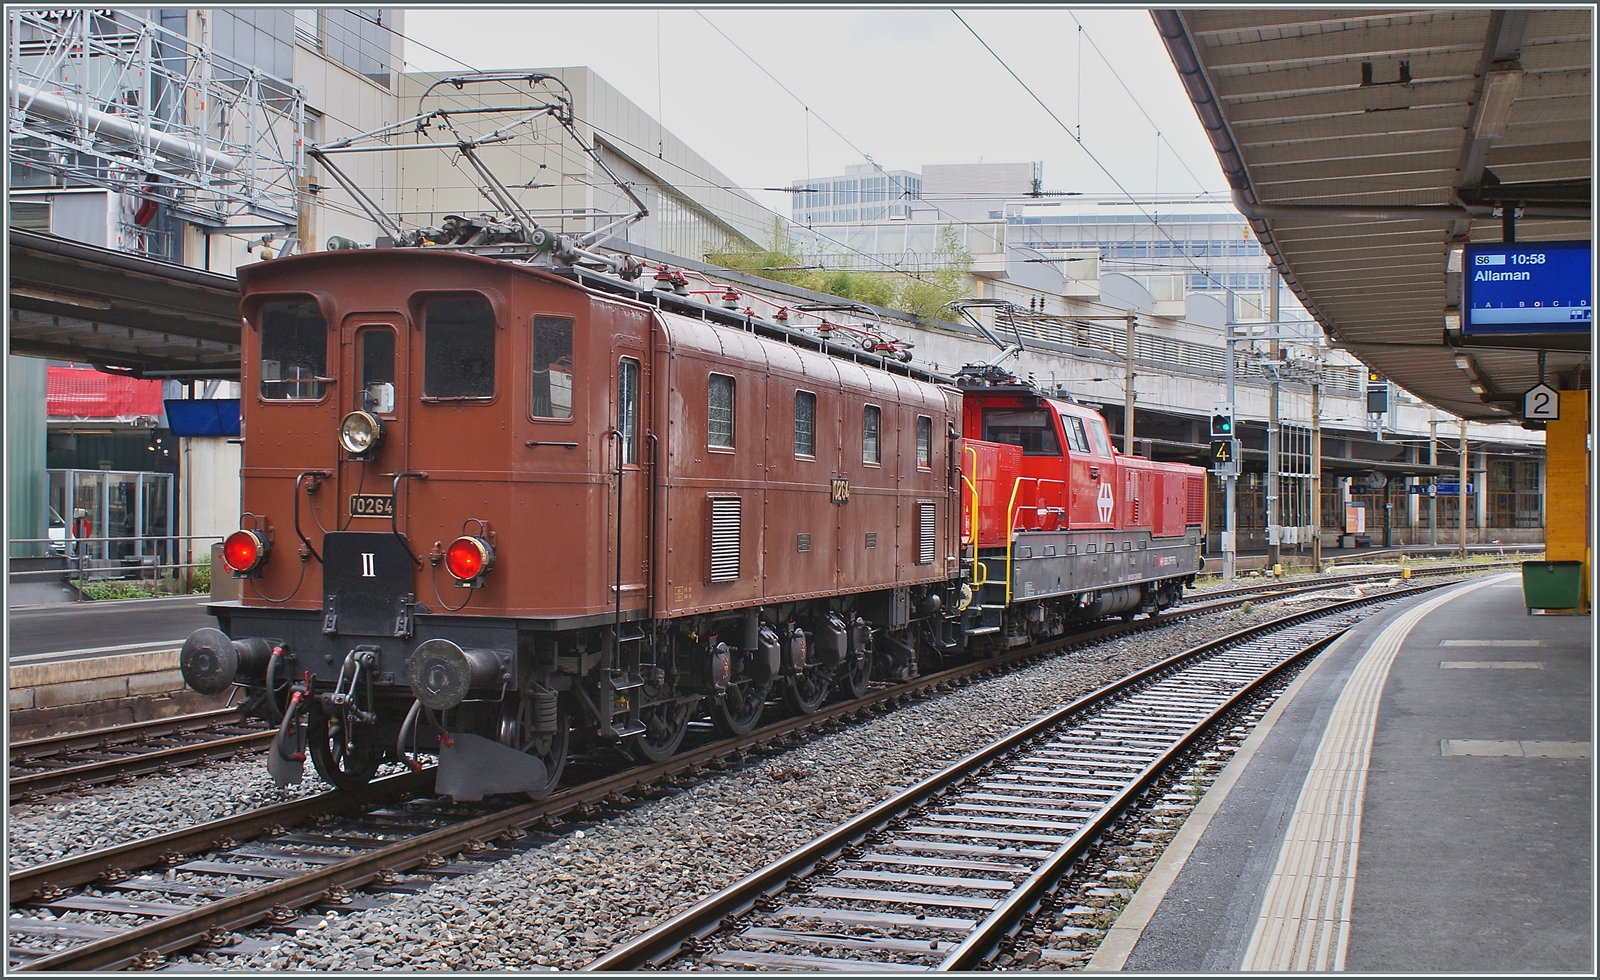 Die SBB Historic Ae 3/6 III 10264 schiebt in Lausanne ein mächtiges ETCS Gerät in Form einer Aem 940 vor sich her. Die Lok ist wohl auf der Rückfahrt vom Dépôt Fest in Olten nach St-Maurice. In den Jahren 1925 und 1926 wurden die kleine Serie der elf Ae 3/6 III 10261 - 10271 gebaut, die 89 Tonnen schwere Lok hatte eine Höchstgeschwindigkeit von Km/h 90 und 1800 PS. Die Lok wurde entwickelt, da recht kurzen Ae 3/5 bei hoher Geschwindigkeit schlechte Fahreigenschaften aufwiesen, somit wurde die Konstruktion der Ae 3/5 einfach verlängert und als Ae 3/6 III in Dienst gestellt. Interessanterweise wurden die letzten Ae 3/5 erst 1983 ausrangiert, die letzte Ae 3/6 III 1980.

28. August 2023